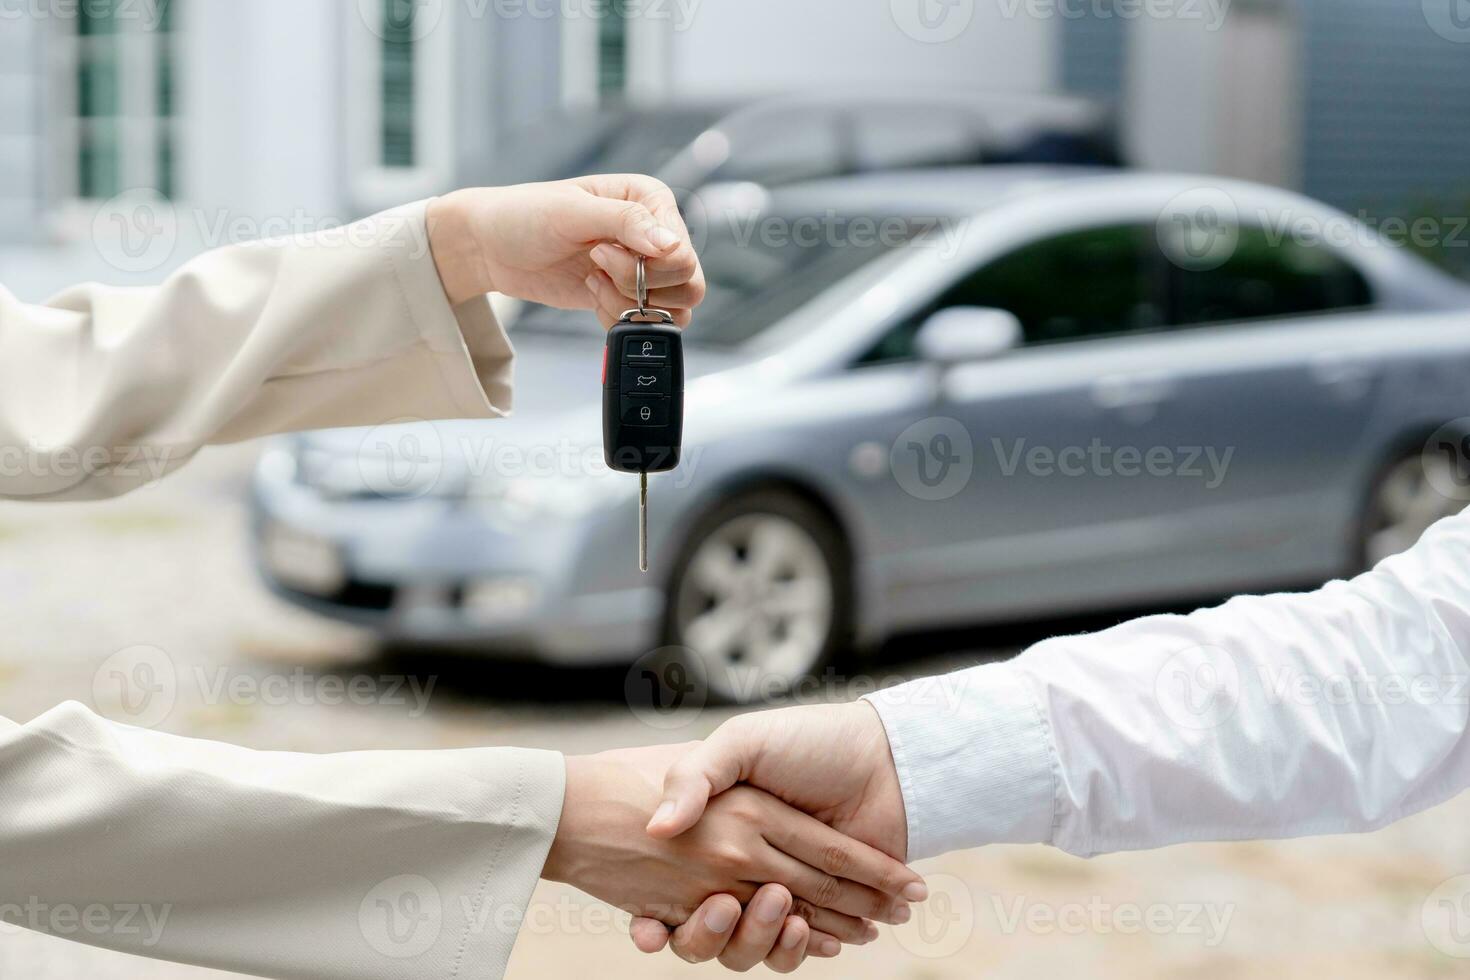 huren, verhuur auto, verkopen, kopen. handel manager sturen auto sleutels naar de nieuw baasje. verkoop, lening credit financieel, huur voertuig, verzekering, huren, verkoper, handelaar, afbetaling, auto zorg bedrijf foto